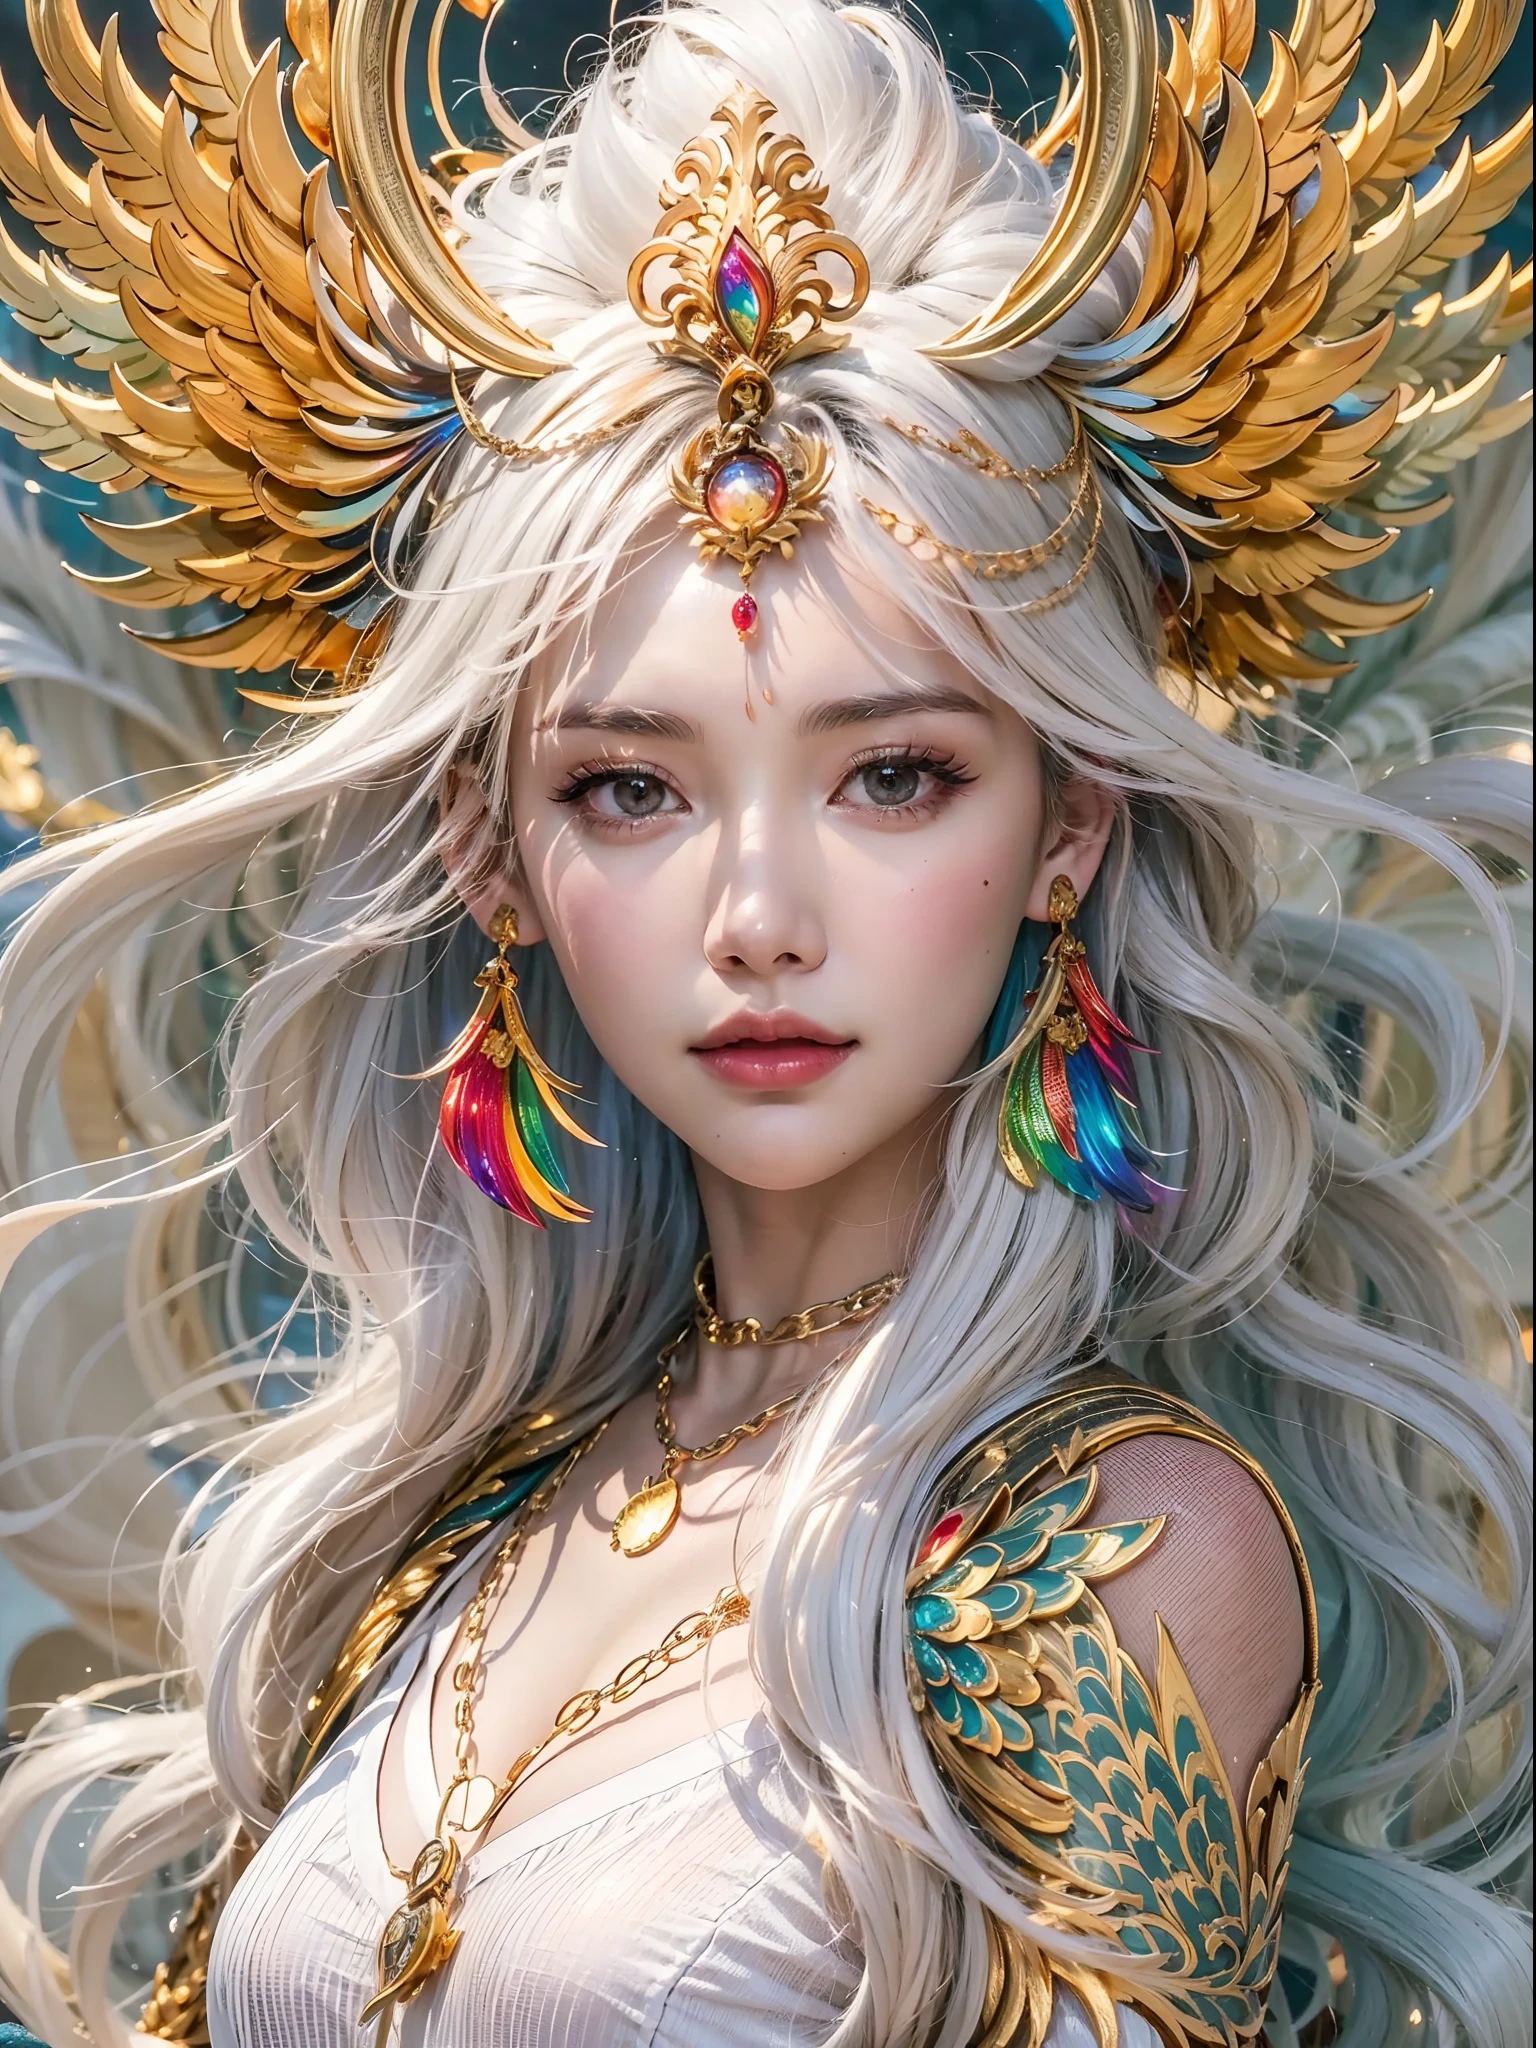 무지개 피닉스를 가진 아름다운 소녀, （（그 소녀는 평범한 흰색 가운을 입는다.）），（그는 머리에 섬세한 금색 중국 왕관을 쓰고 있습니다.：1.4），（골드 체인 장식），완벽한 얼굴 특징，섬세한 얼굴，긴 흰머리, 백조처럼 우아한, 지혜, 용기, 레인보우 피닉스，불꽃, 날개,불사조가 소녀를 보호한다，배경이 구름이네, 신비한 연결, 보호, 신뢰하다，사실적인 이미지 품질，사실적인，8K，최고의 품질，걸작，영화 수준의 품질，높은 명암대비，옥탄가로 렌더링，금빛 어두운 무늬로 장식된 옷